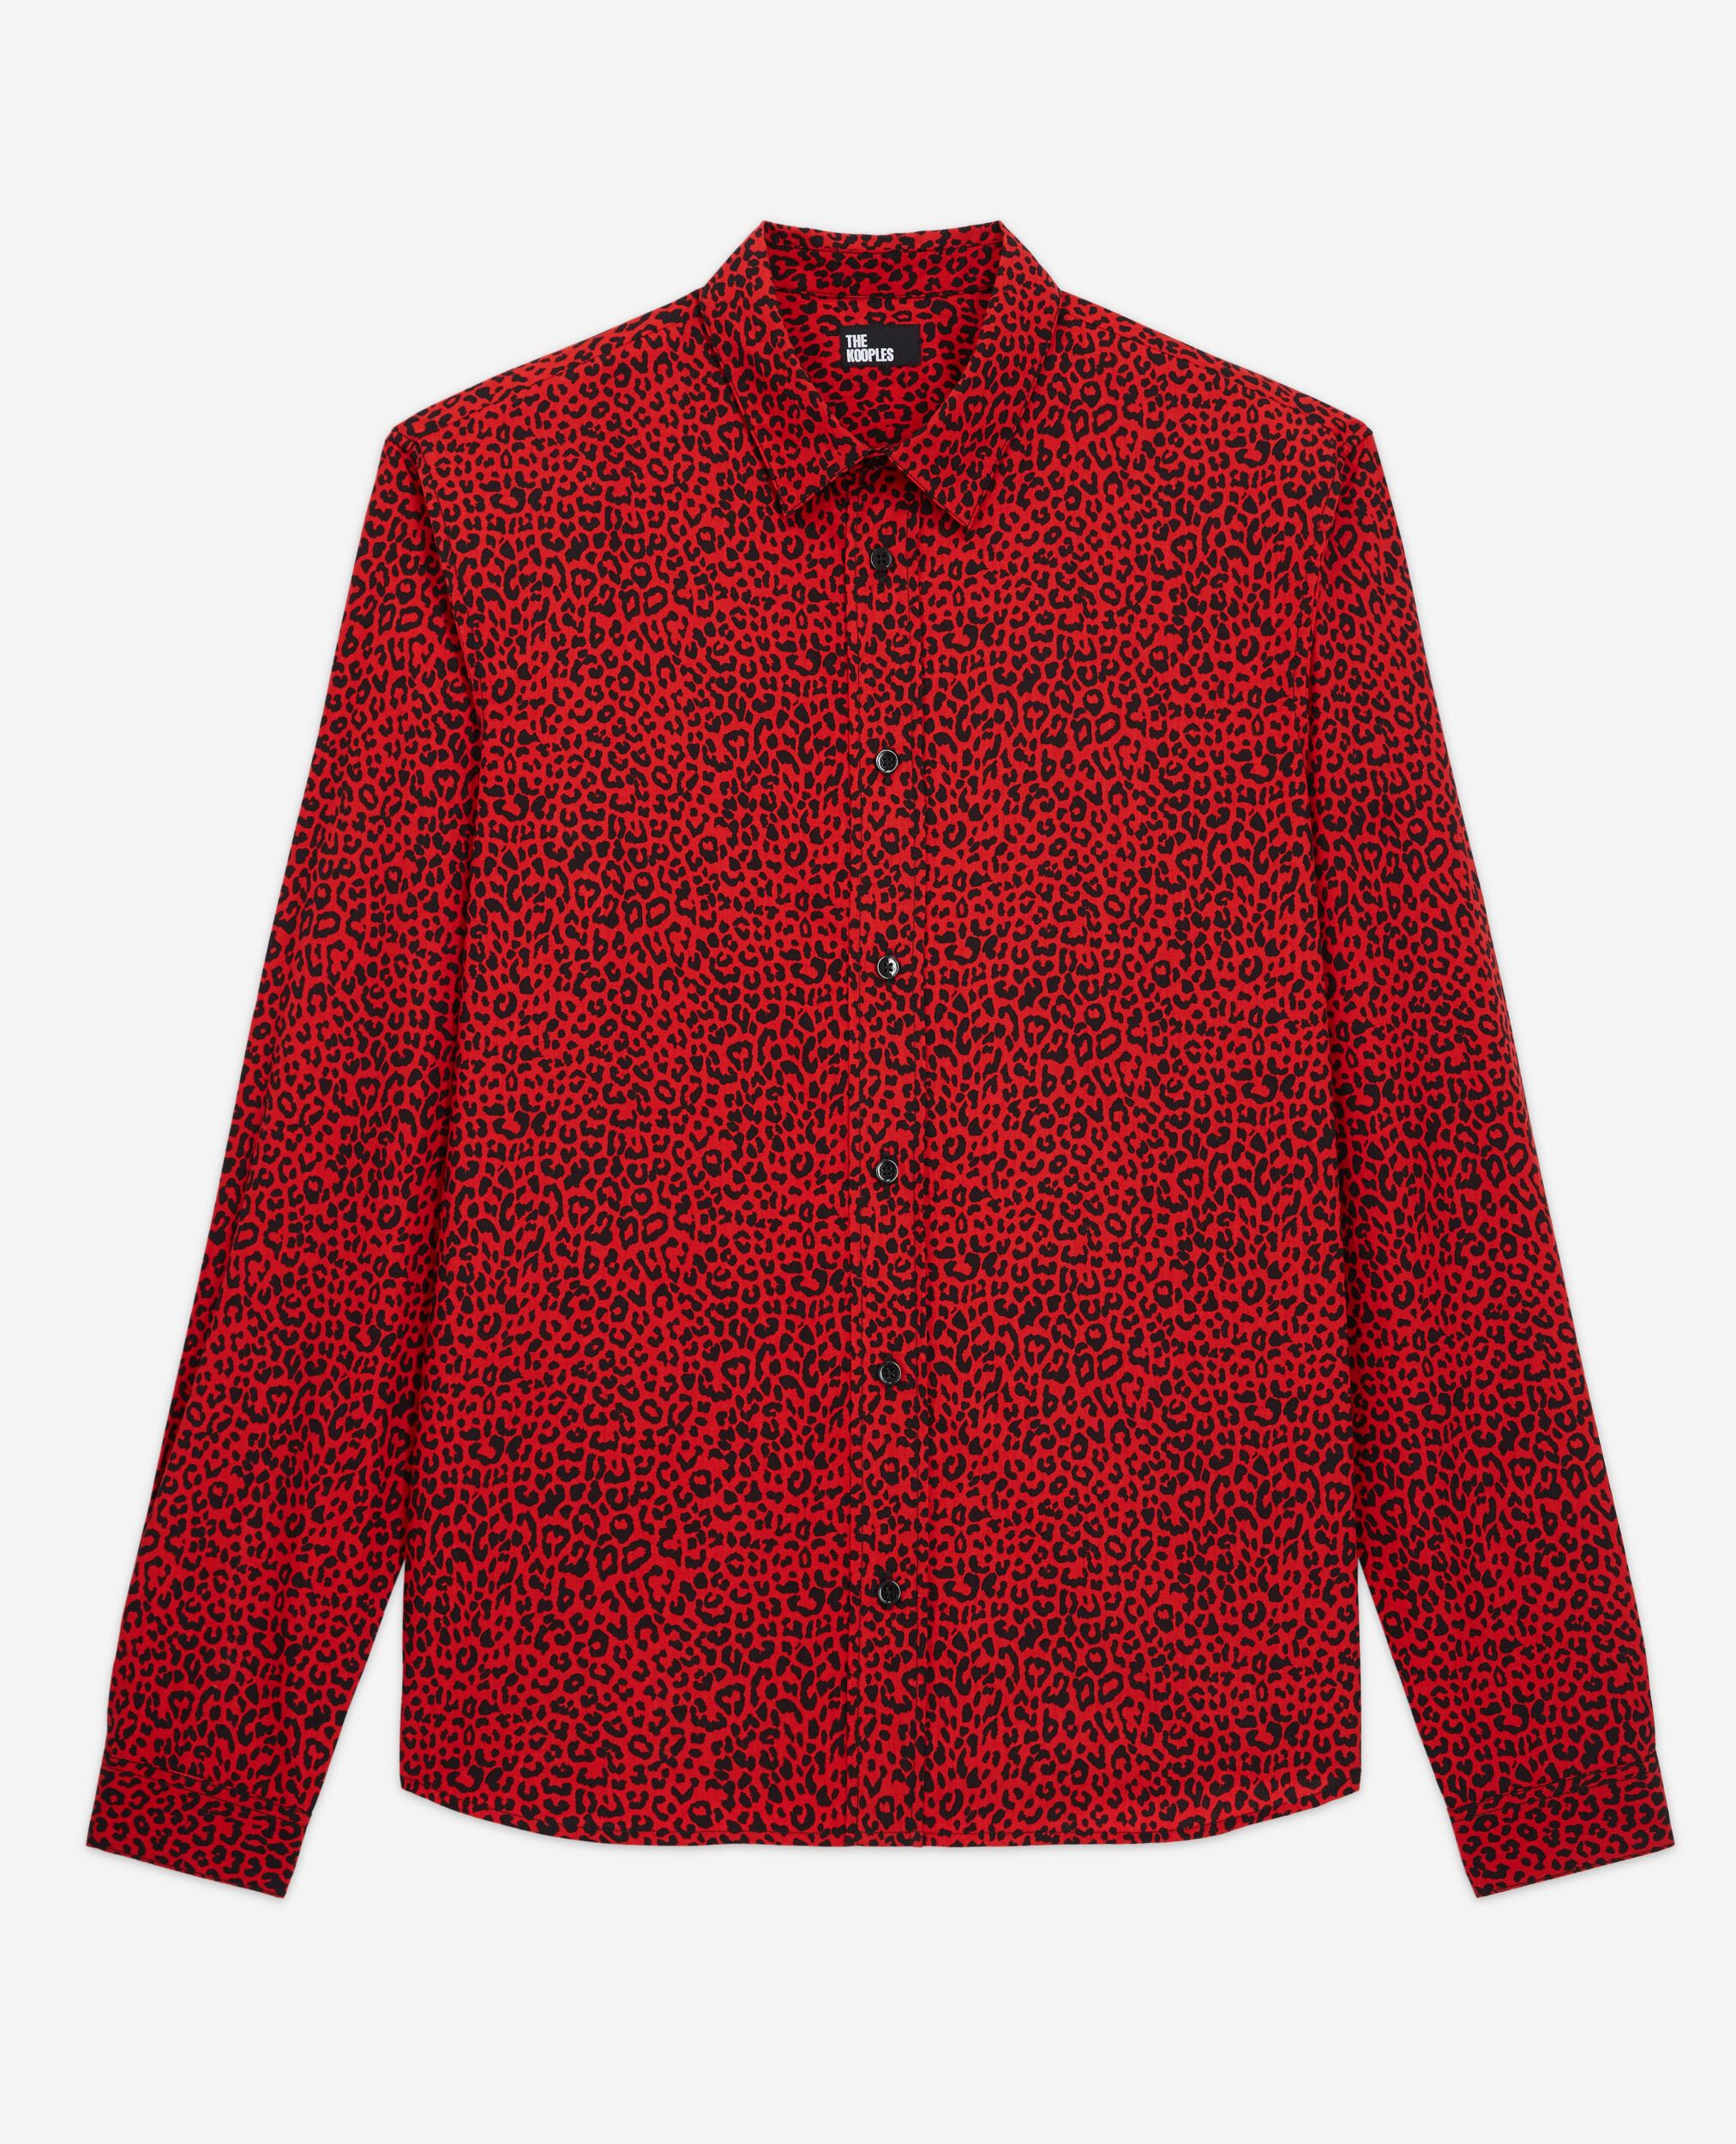 Hemd mit Leopardenmuster rot und Klassischer Kragen, RED / BLACK, hi-res image number null